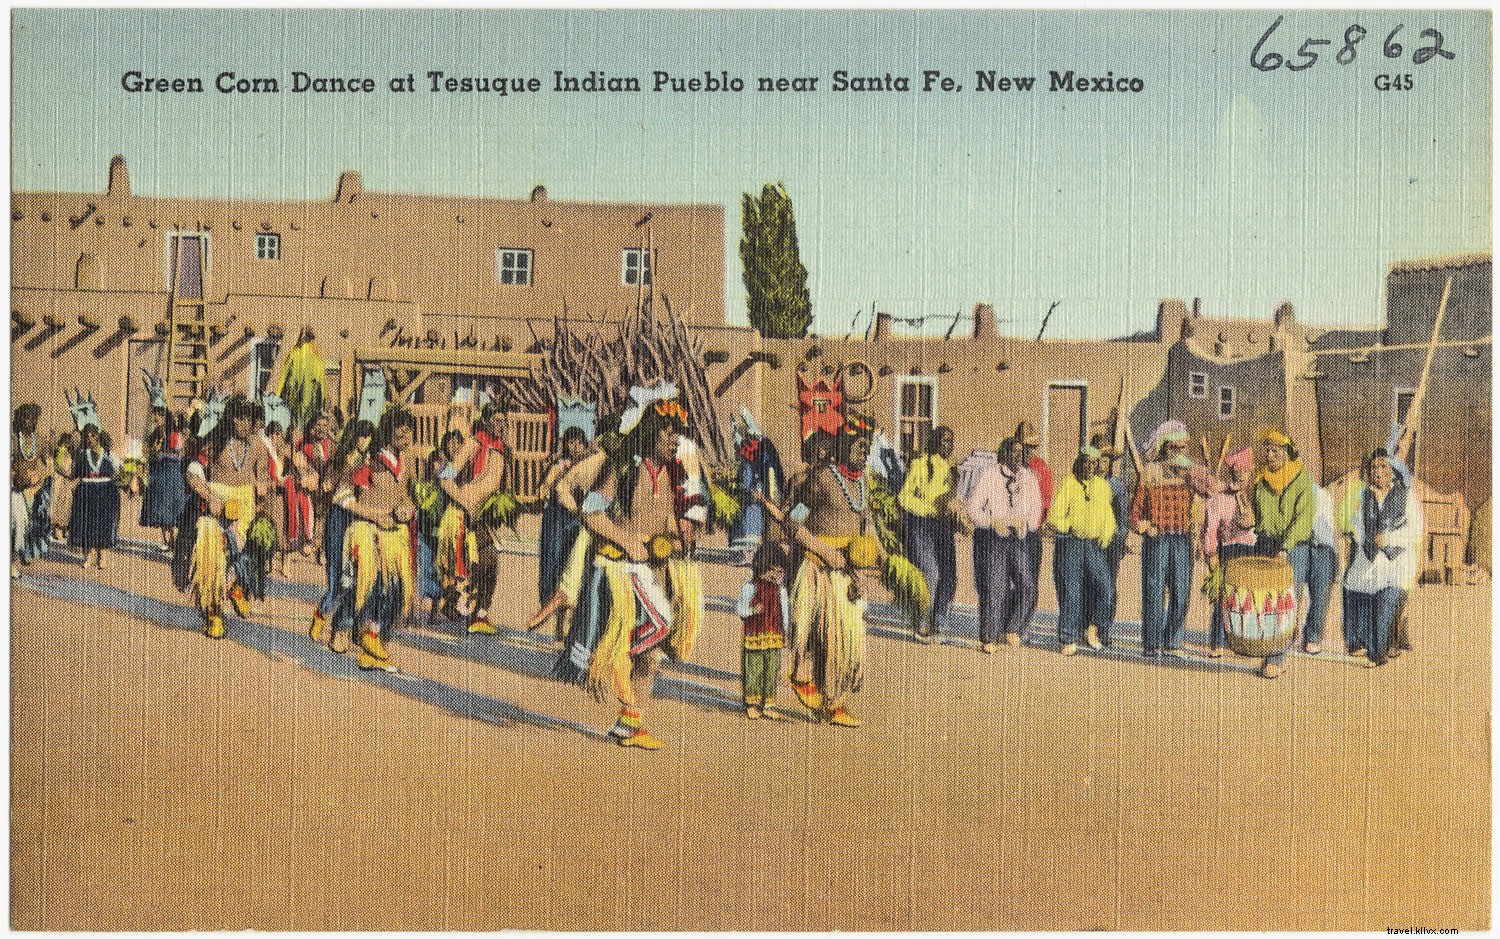 Tradiciones y talentos calientan el invierno en Santa Fe 